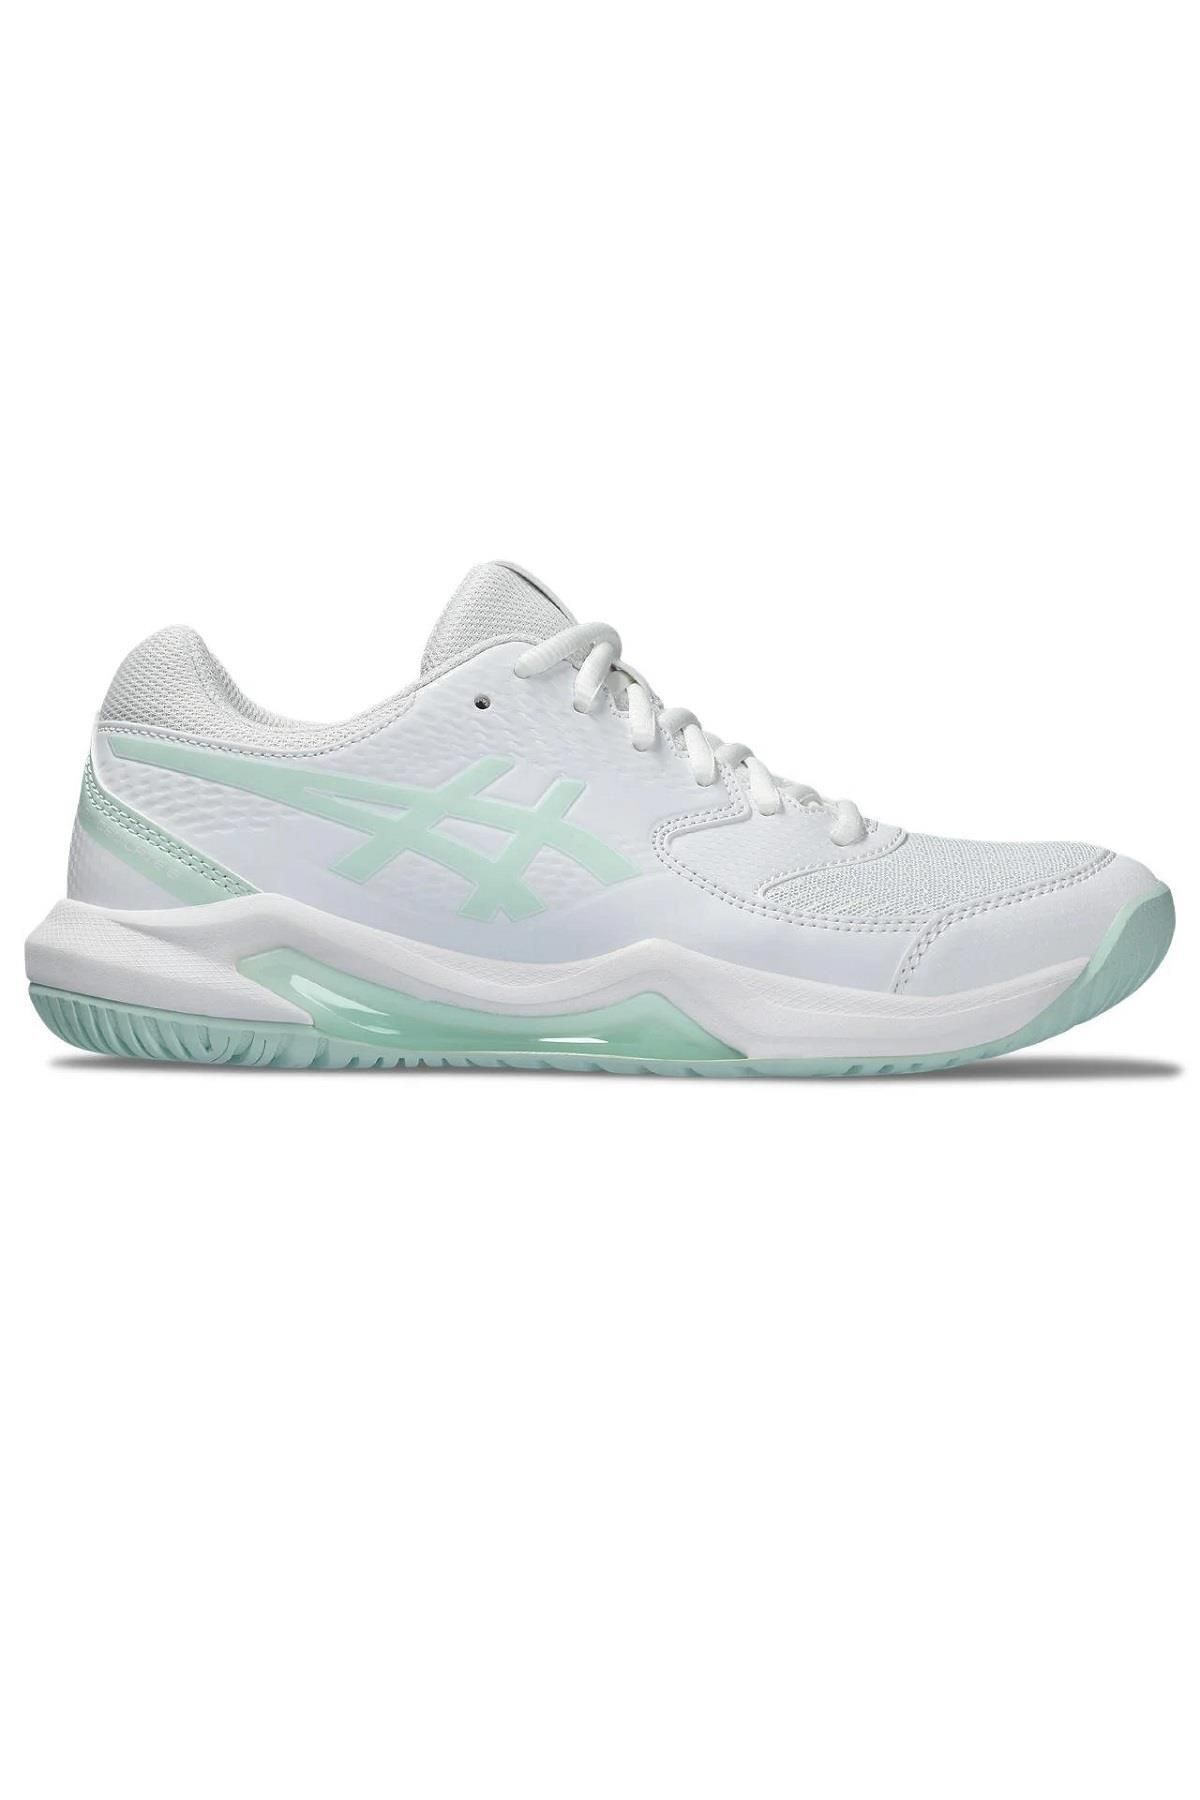 Asics Gel-Dedicate 8 Beyaz Yeşil  Tenis Ayakkabısı